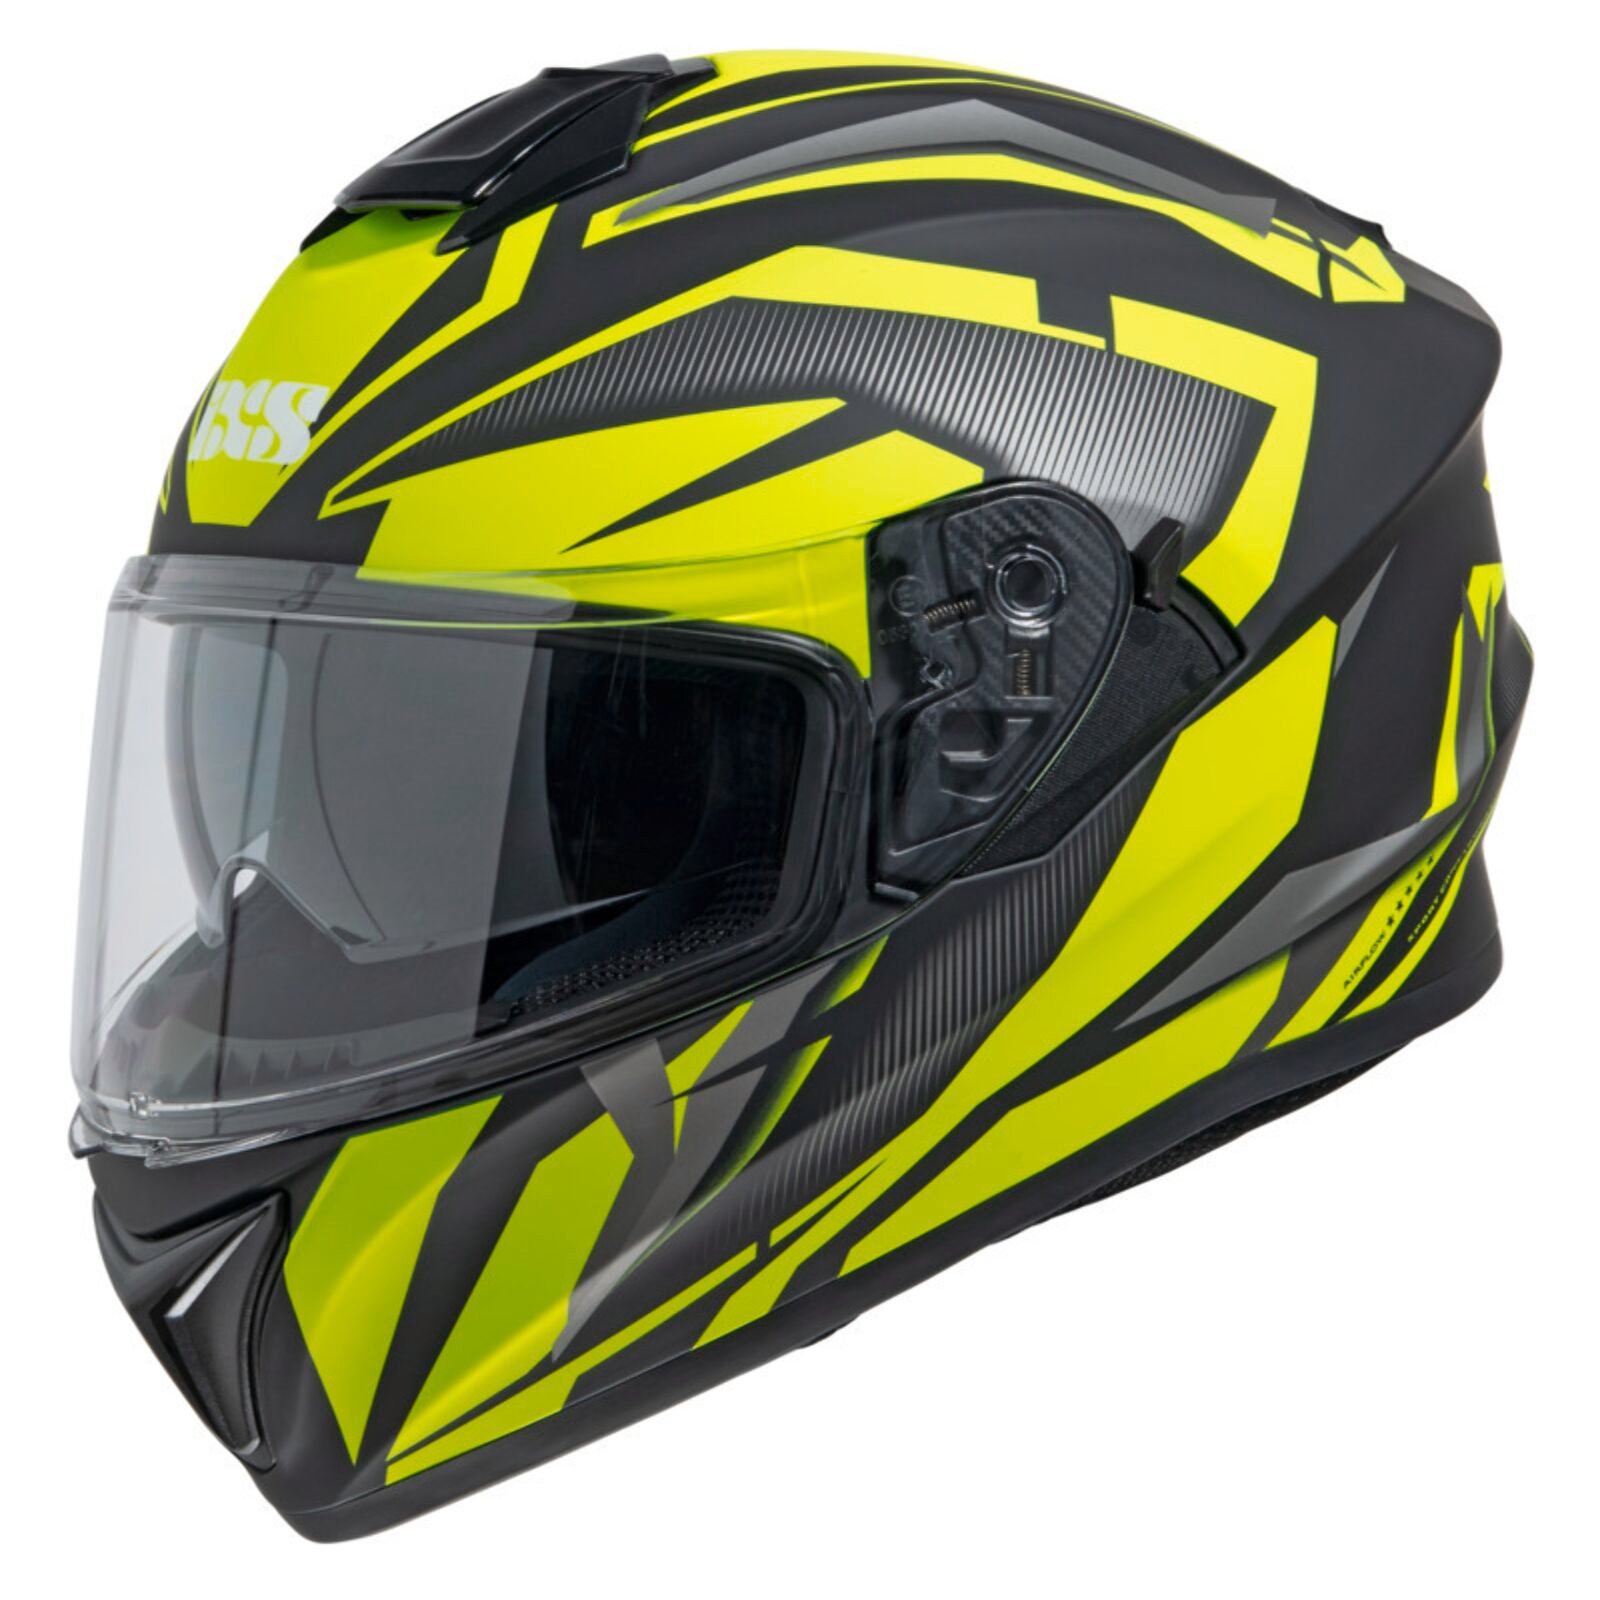 Obrázek produktu Integrální helma iXS iXS216 2.1 X14080 matně černá-žlutá L X14080-M35-L